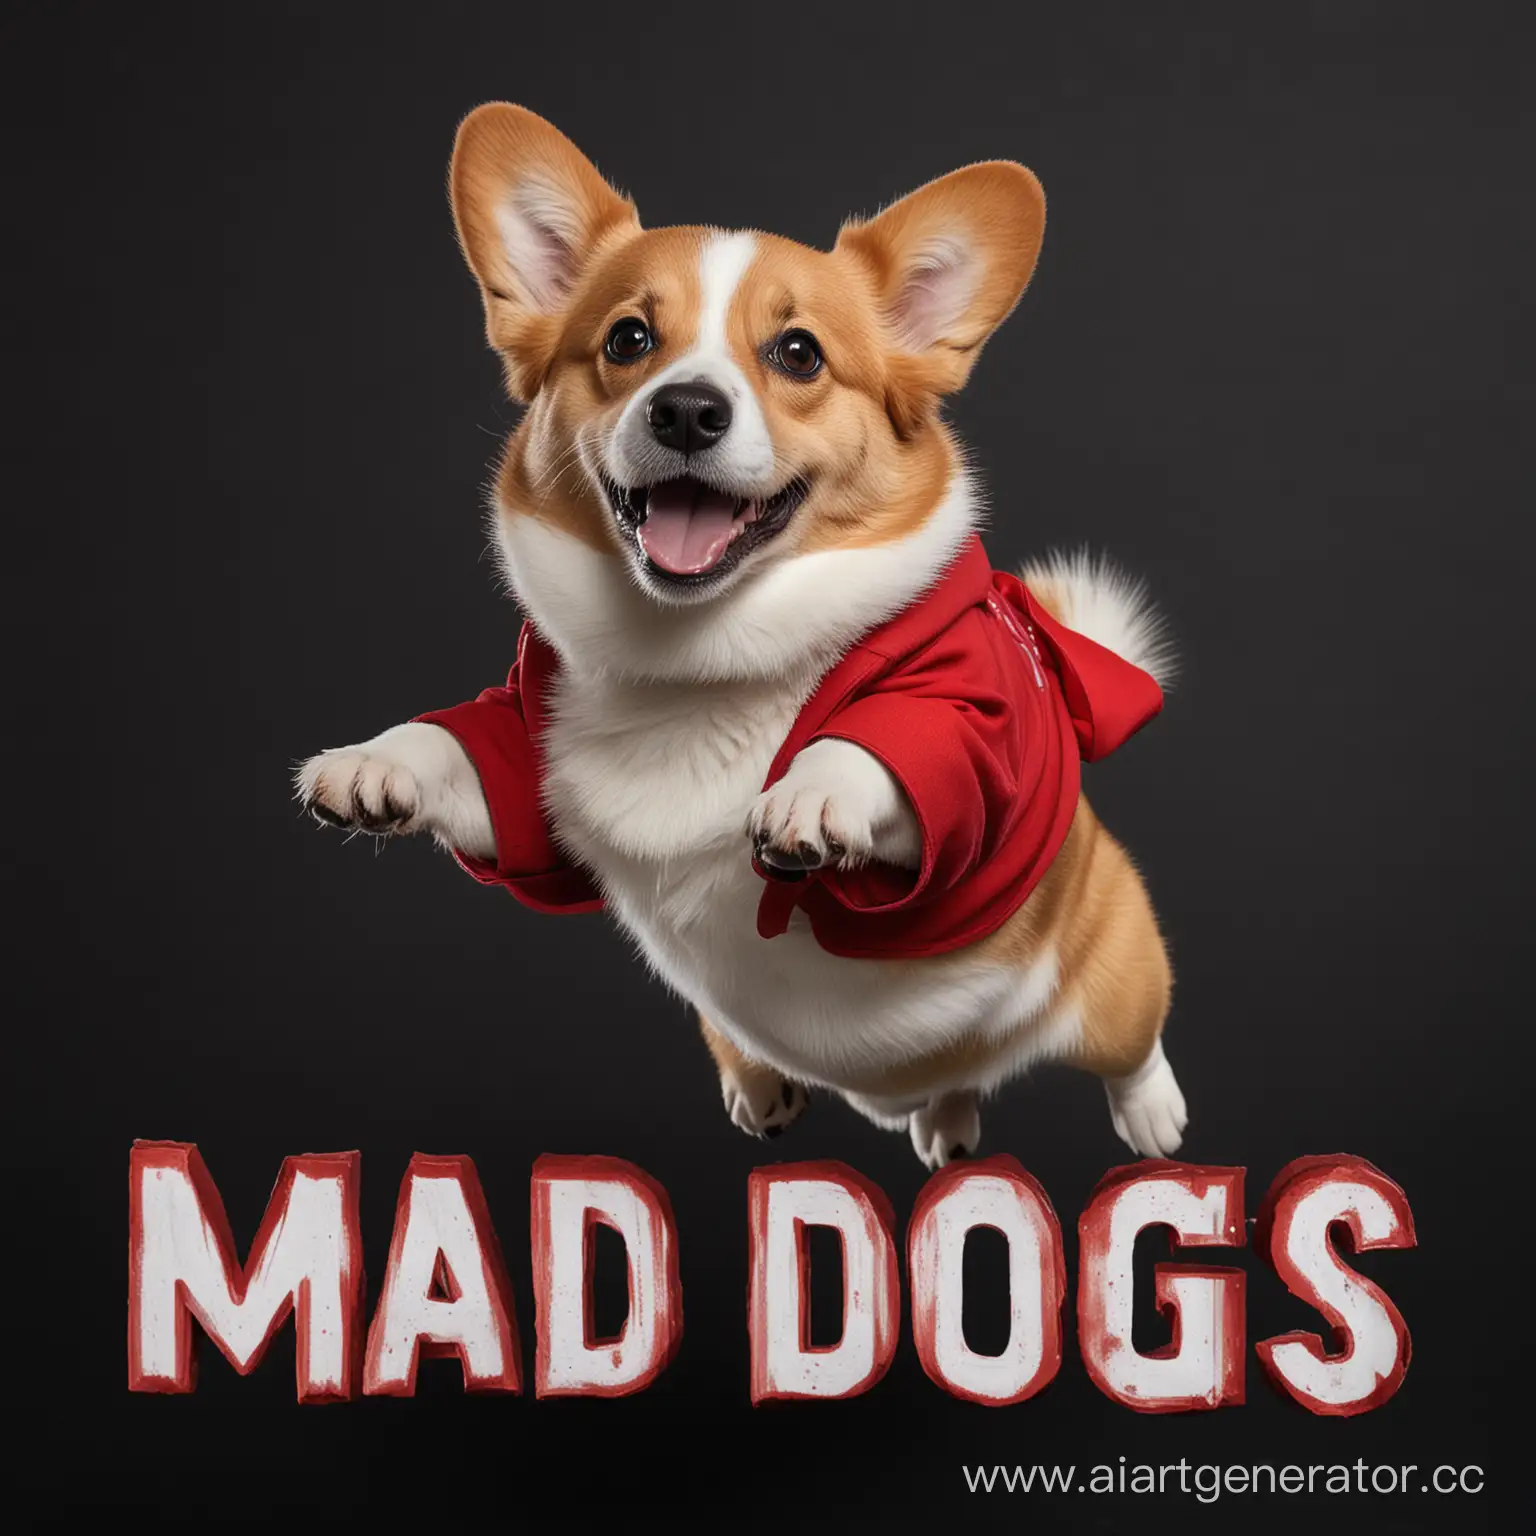 Черный фон на котором прыгающий корги рыжего окраса а на нём красная надпись "Mad Dogs"